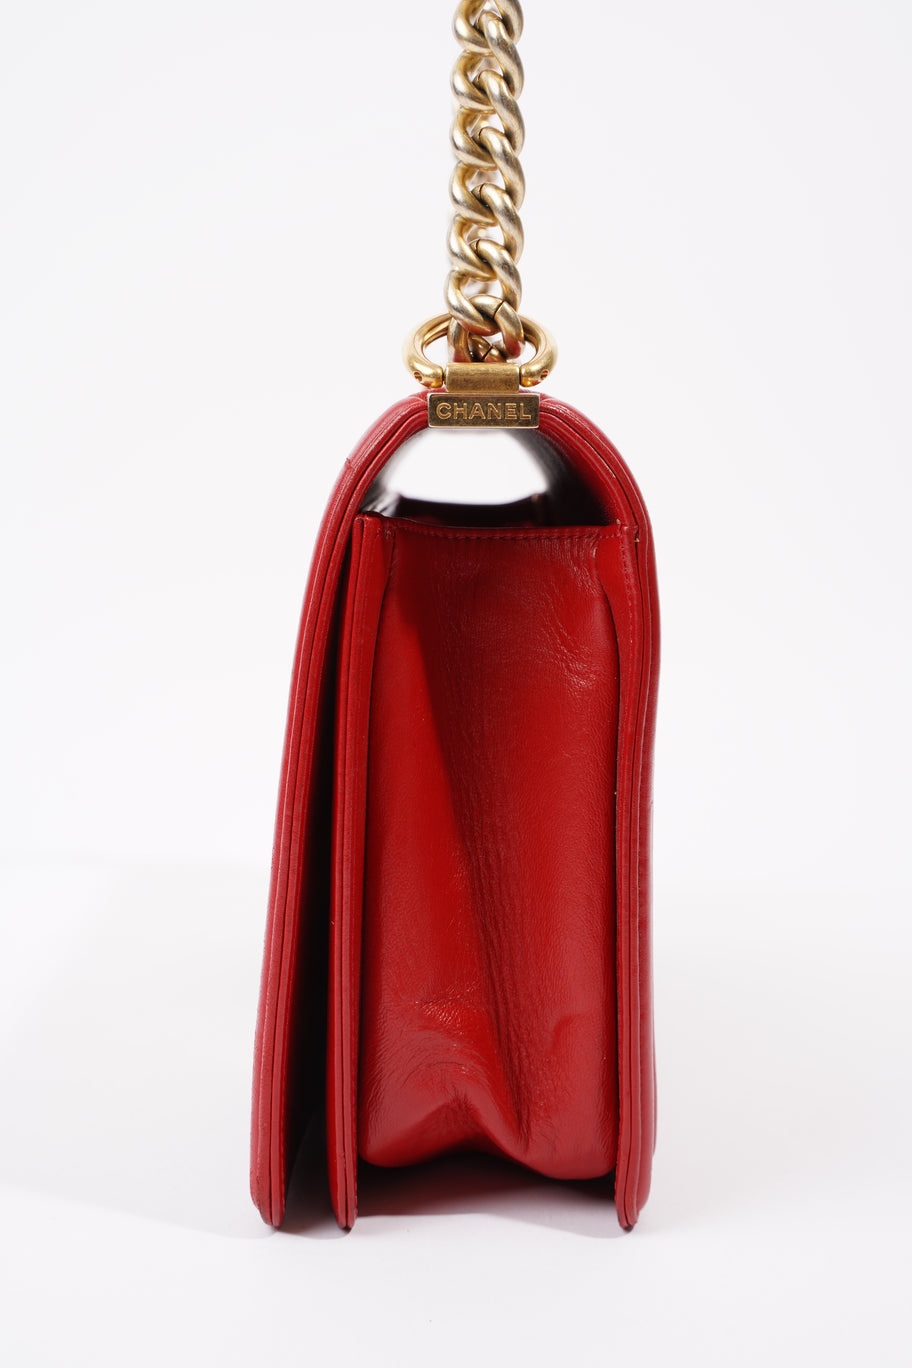 Boy Bag Red Calfskin Leather Large Image 4